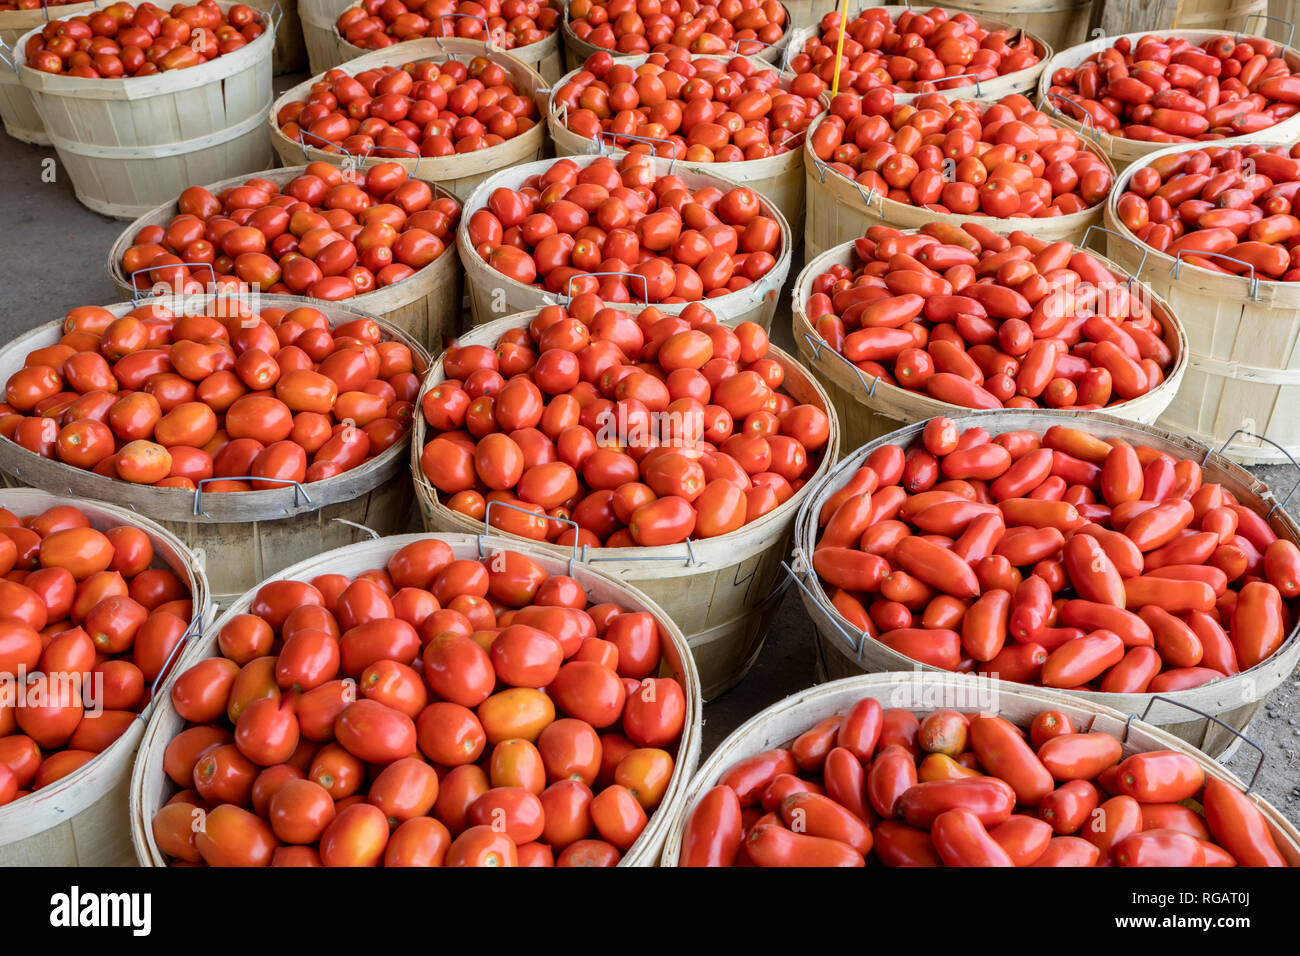 Romano, i pomodorini per la vendita in un mercato degli agricoltori dal pacco o bushel. Foto Stock